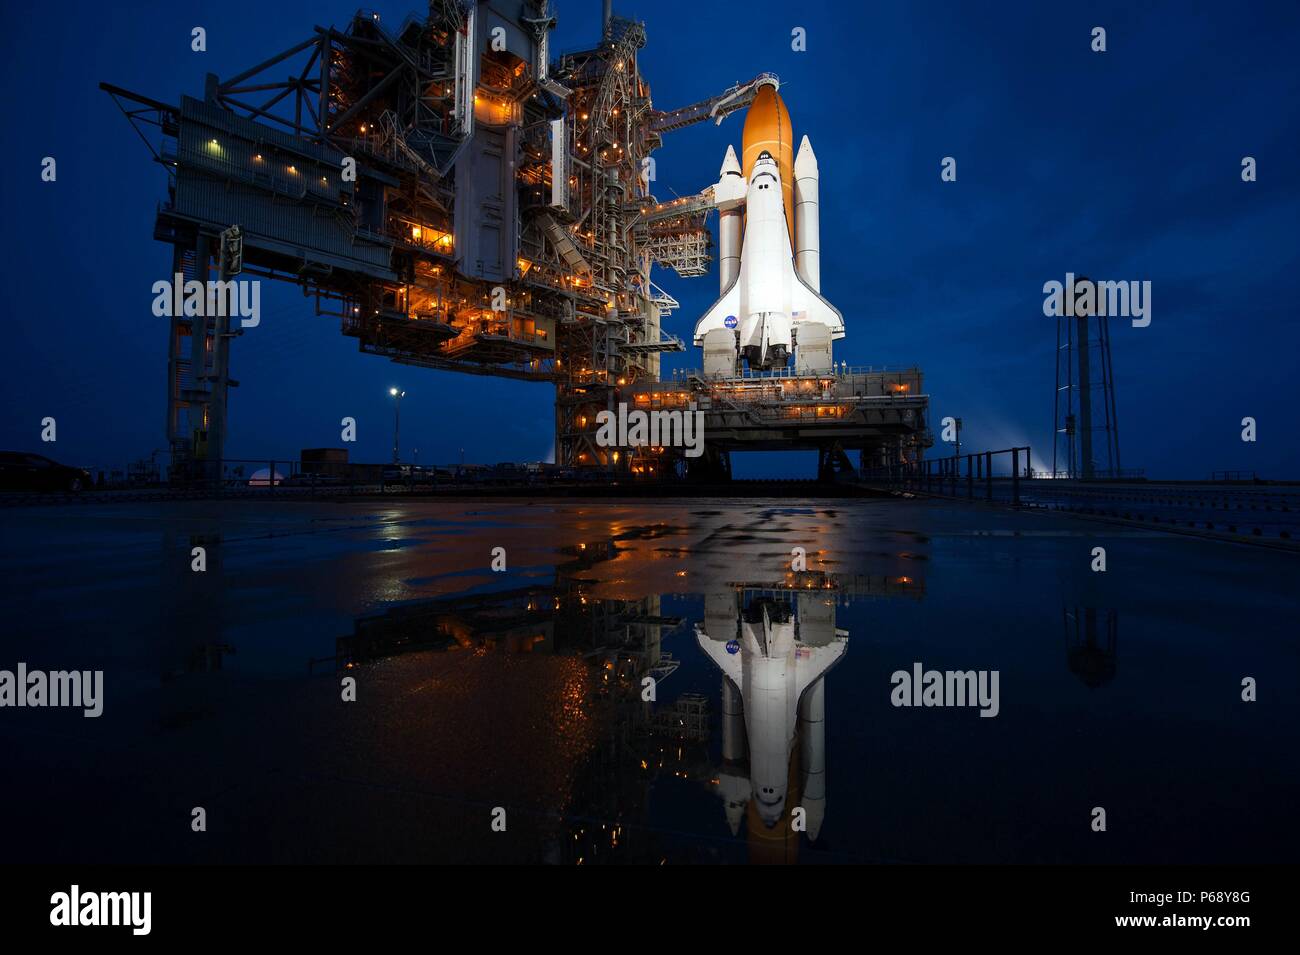 Fotografia della navetta spaziale Atlantis sulla rampa di lancio. Datata 2011 Foto Stock